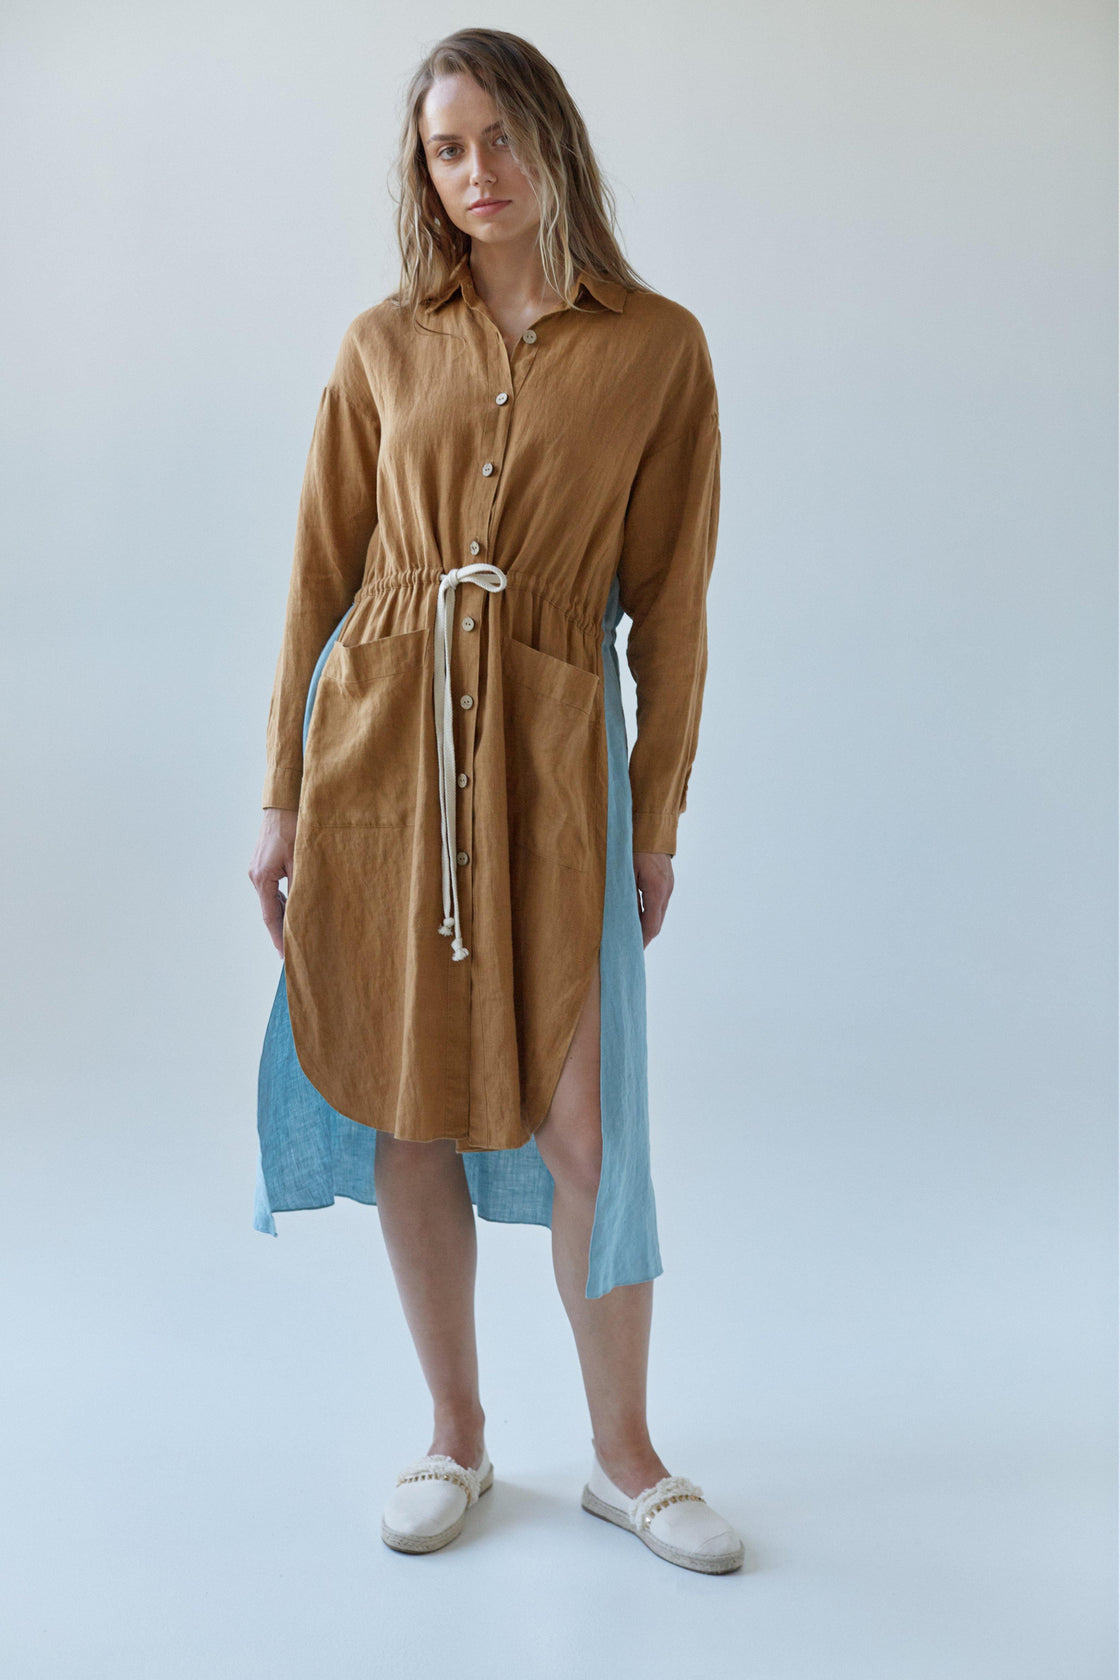 Linen dual color dress with coconut buttons - Manufacture de Lin